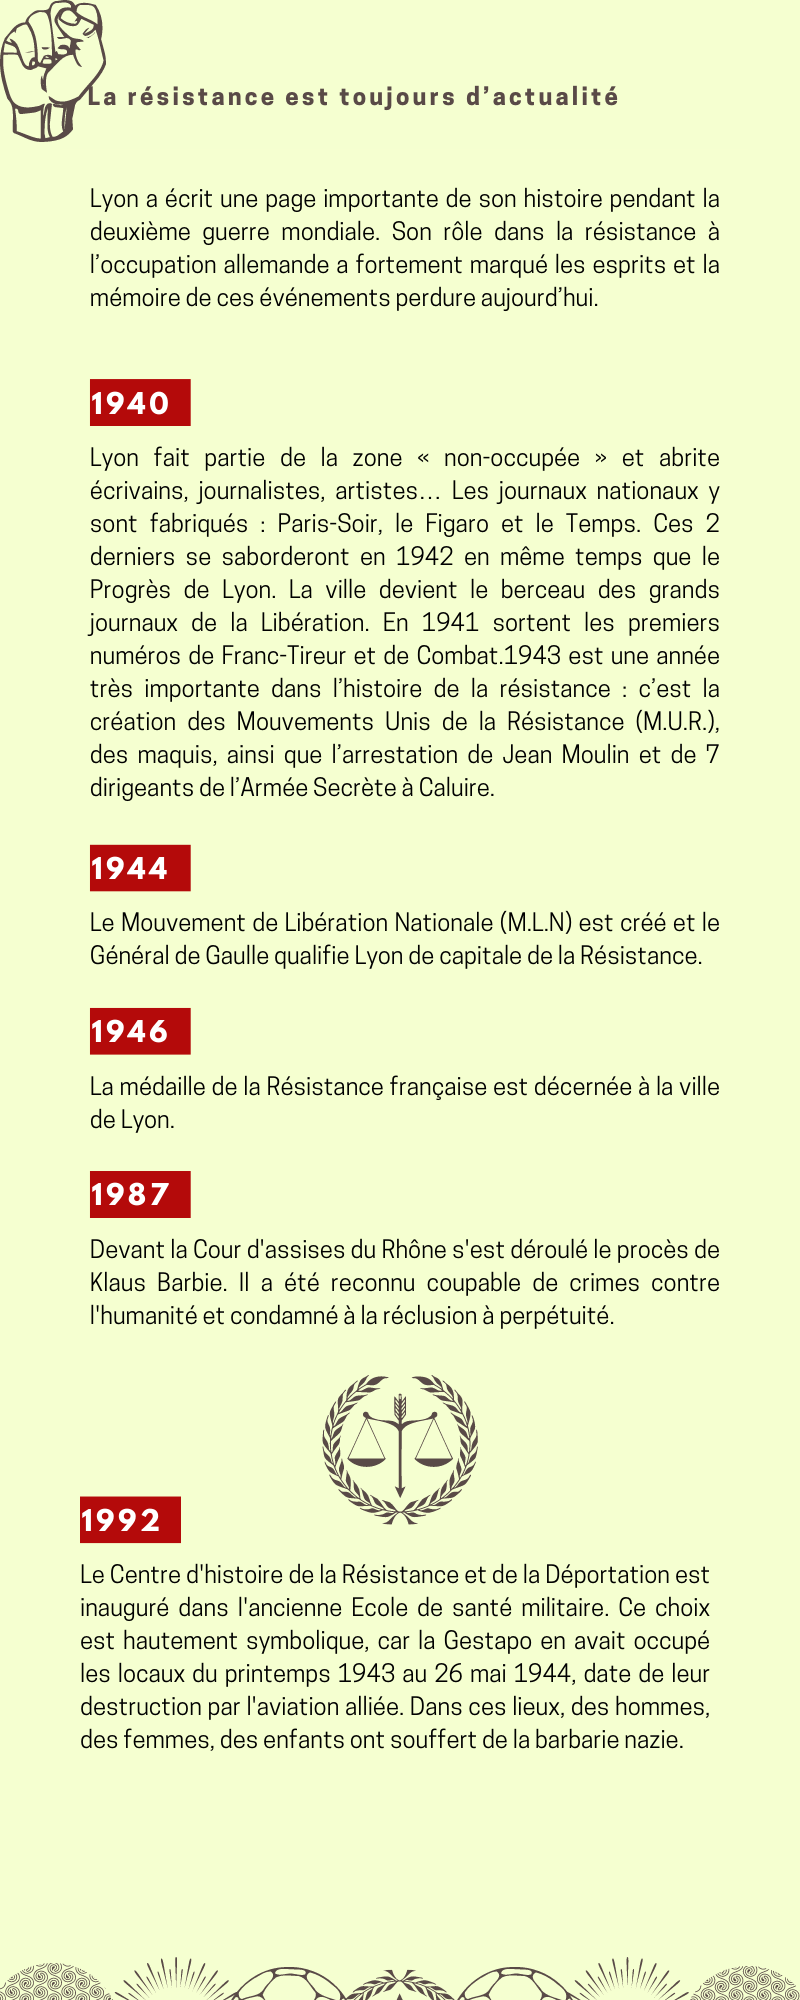 Chronologie sur le thème de la résistance de 1940 à 1992